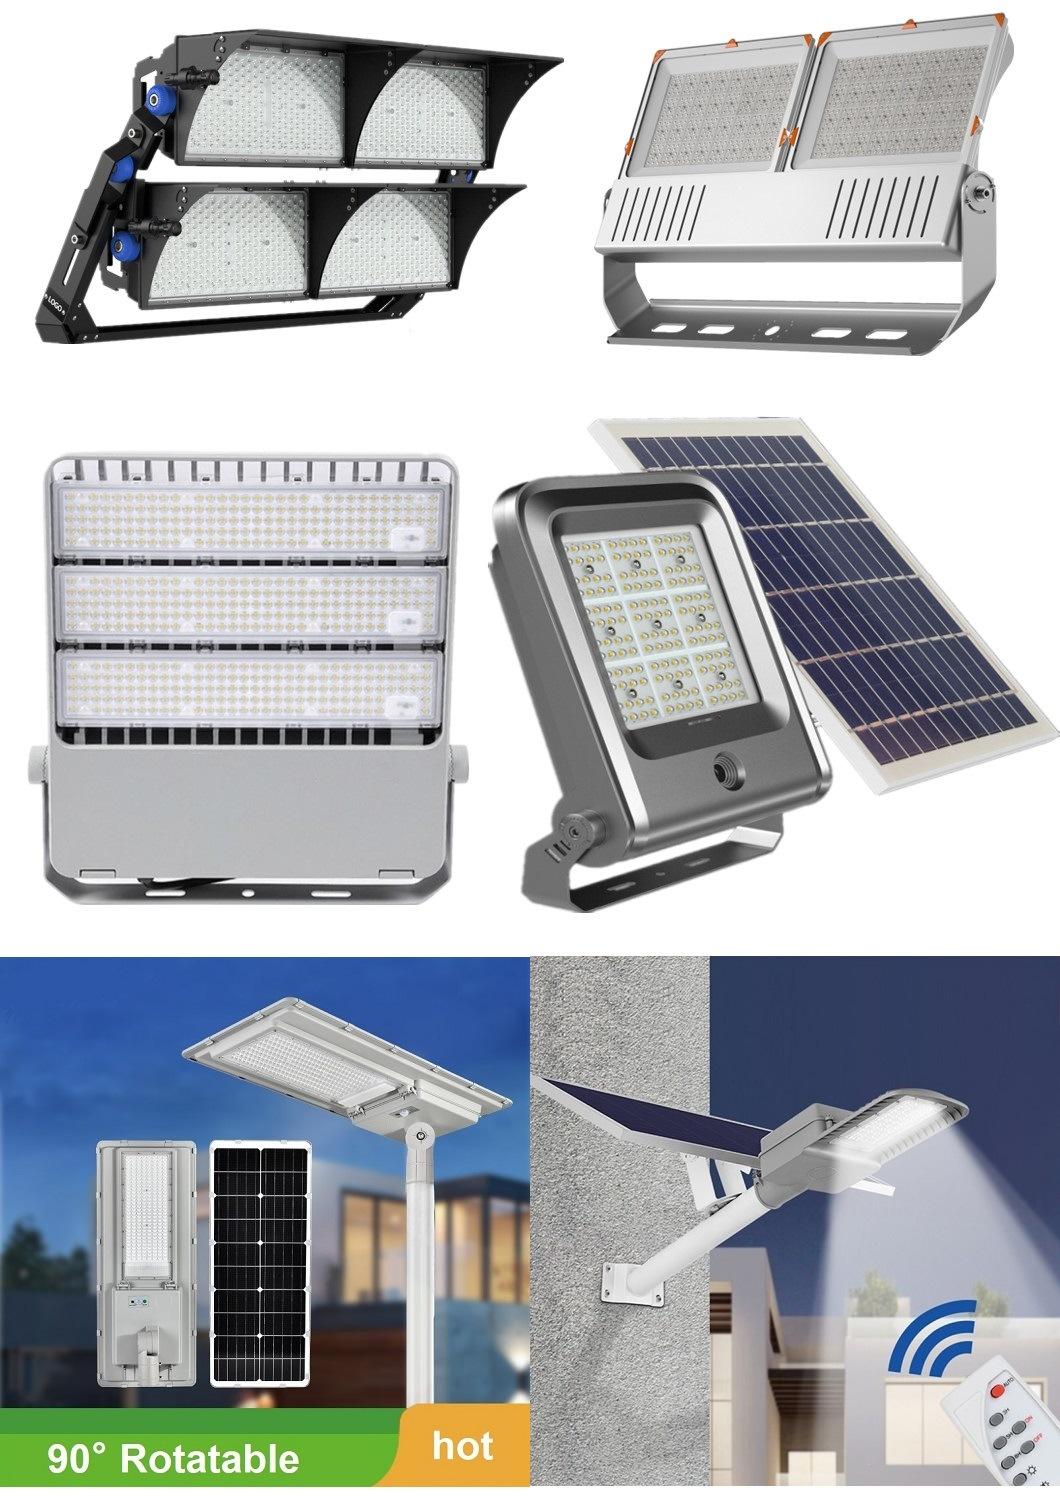 100W 200W All in One LED Lighting Solar Powered Garden Light Solar Streetlight with Motion Sensor